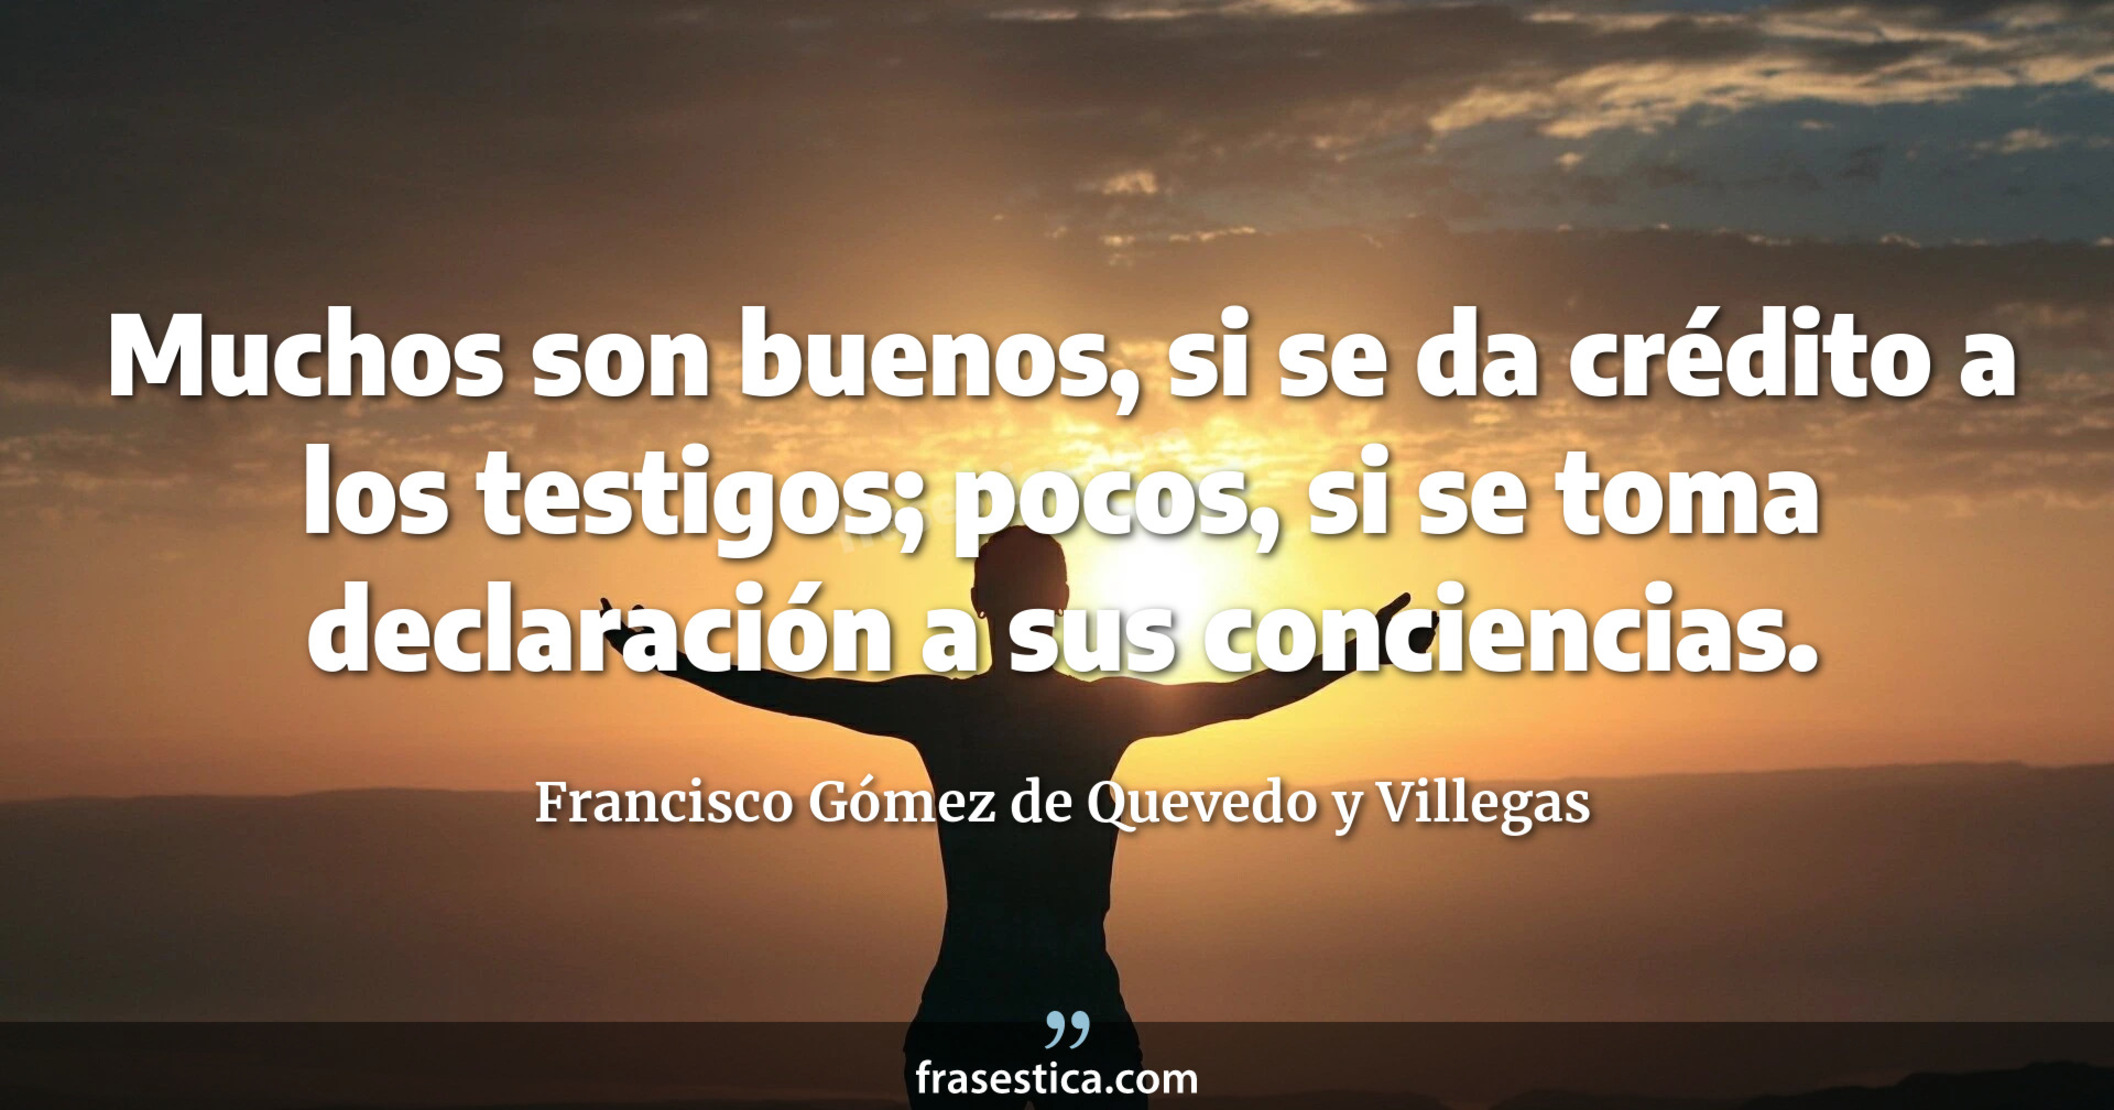 Muchos son buenos, si se da crédito a los testigos; pocos, si se toma declaración a sus conciencias. - Francisco Gómez de Quevedo y Villegas